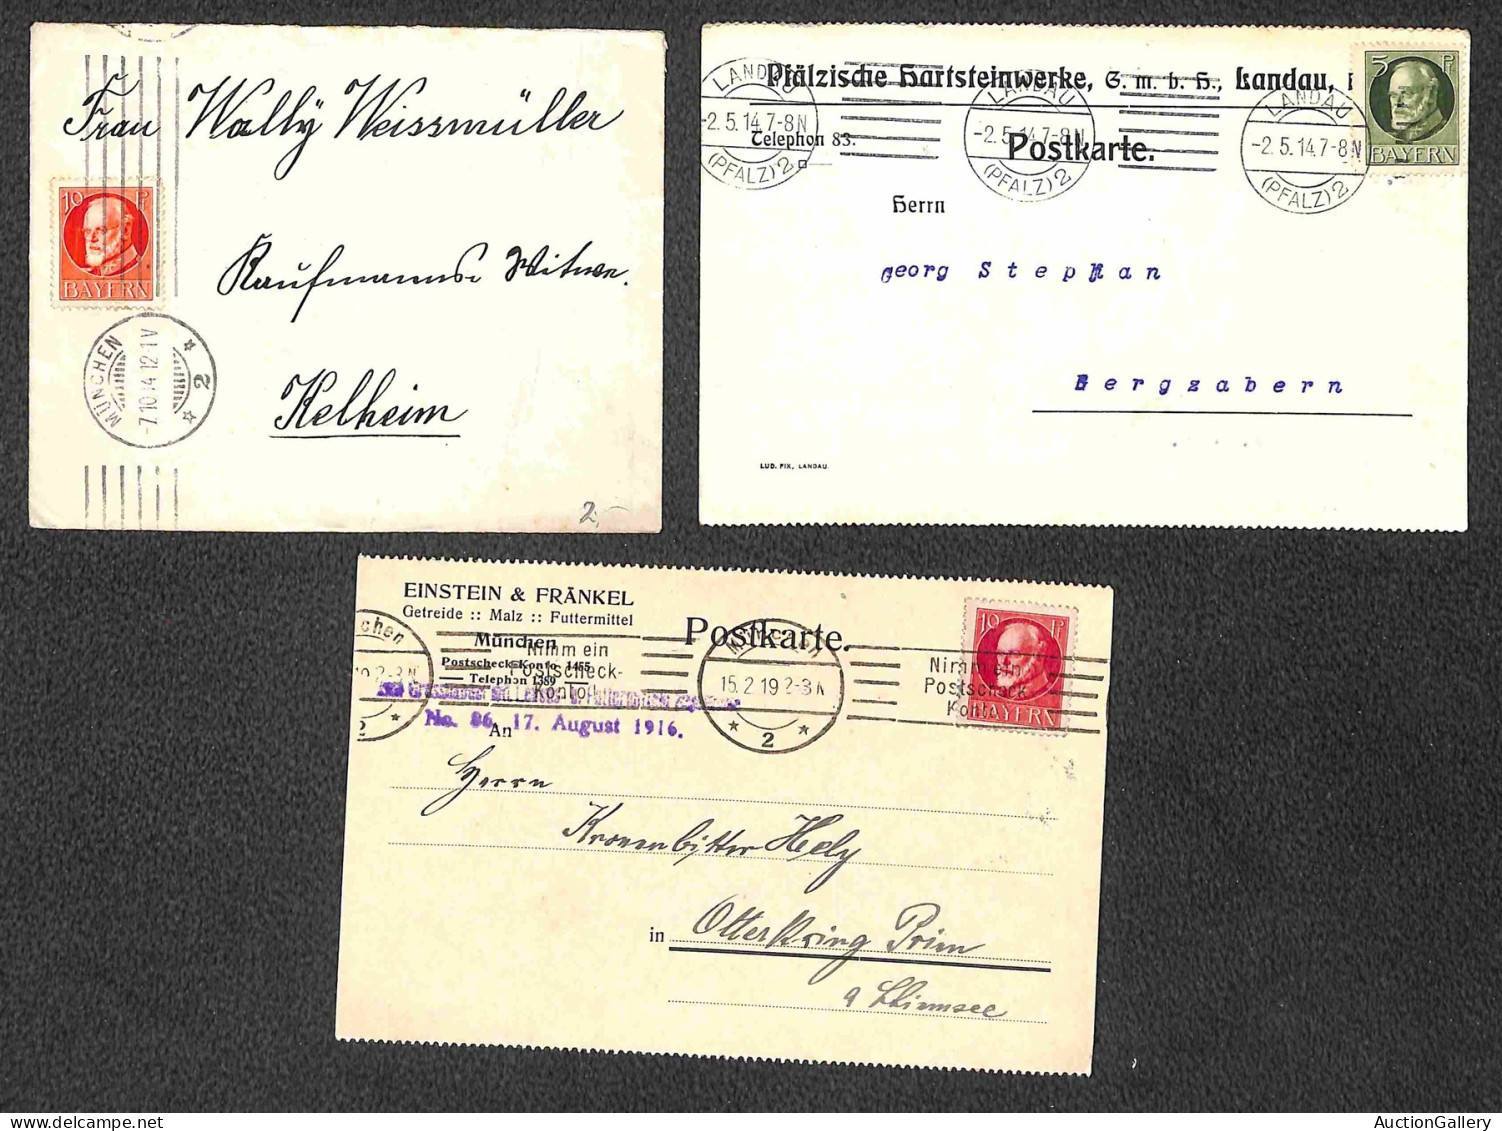 EUROPA - GERMANIA - 1911/1919 - Insieme di 23 oggetti postali del periodo con diverse affrancature (Leopoldo + Luigi III